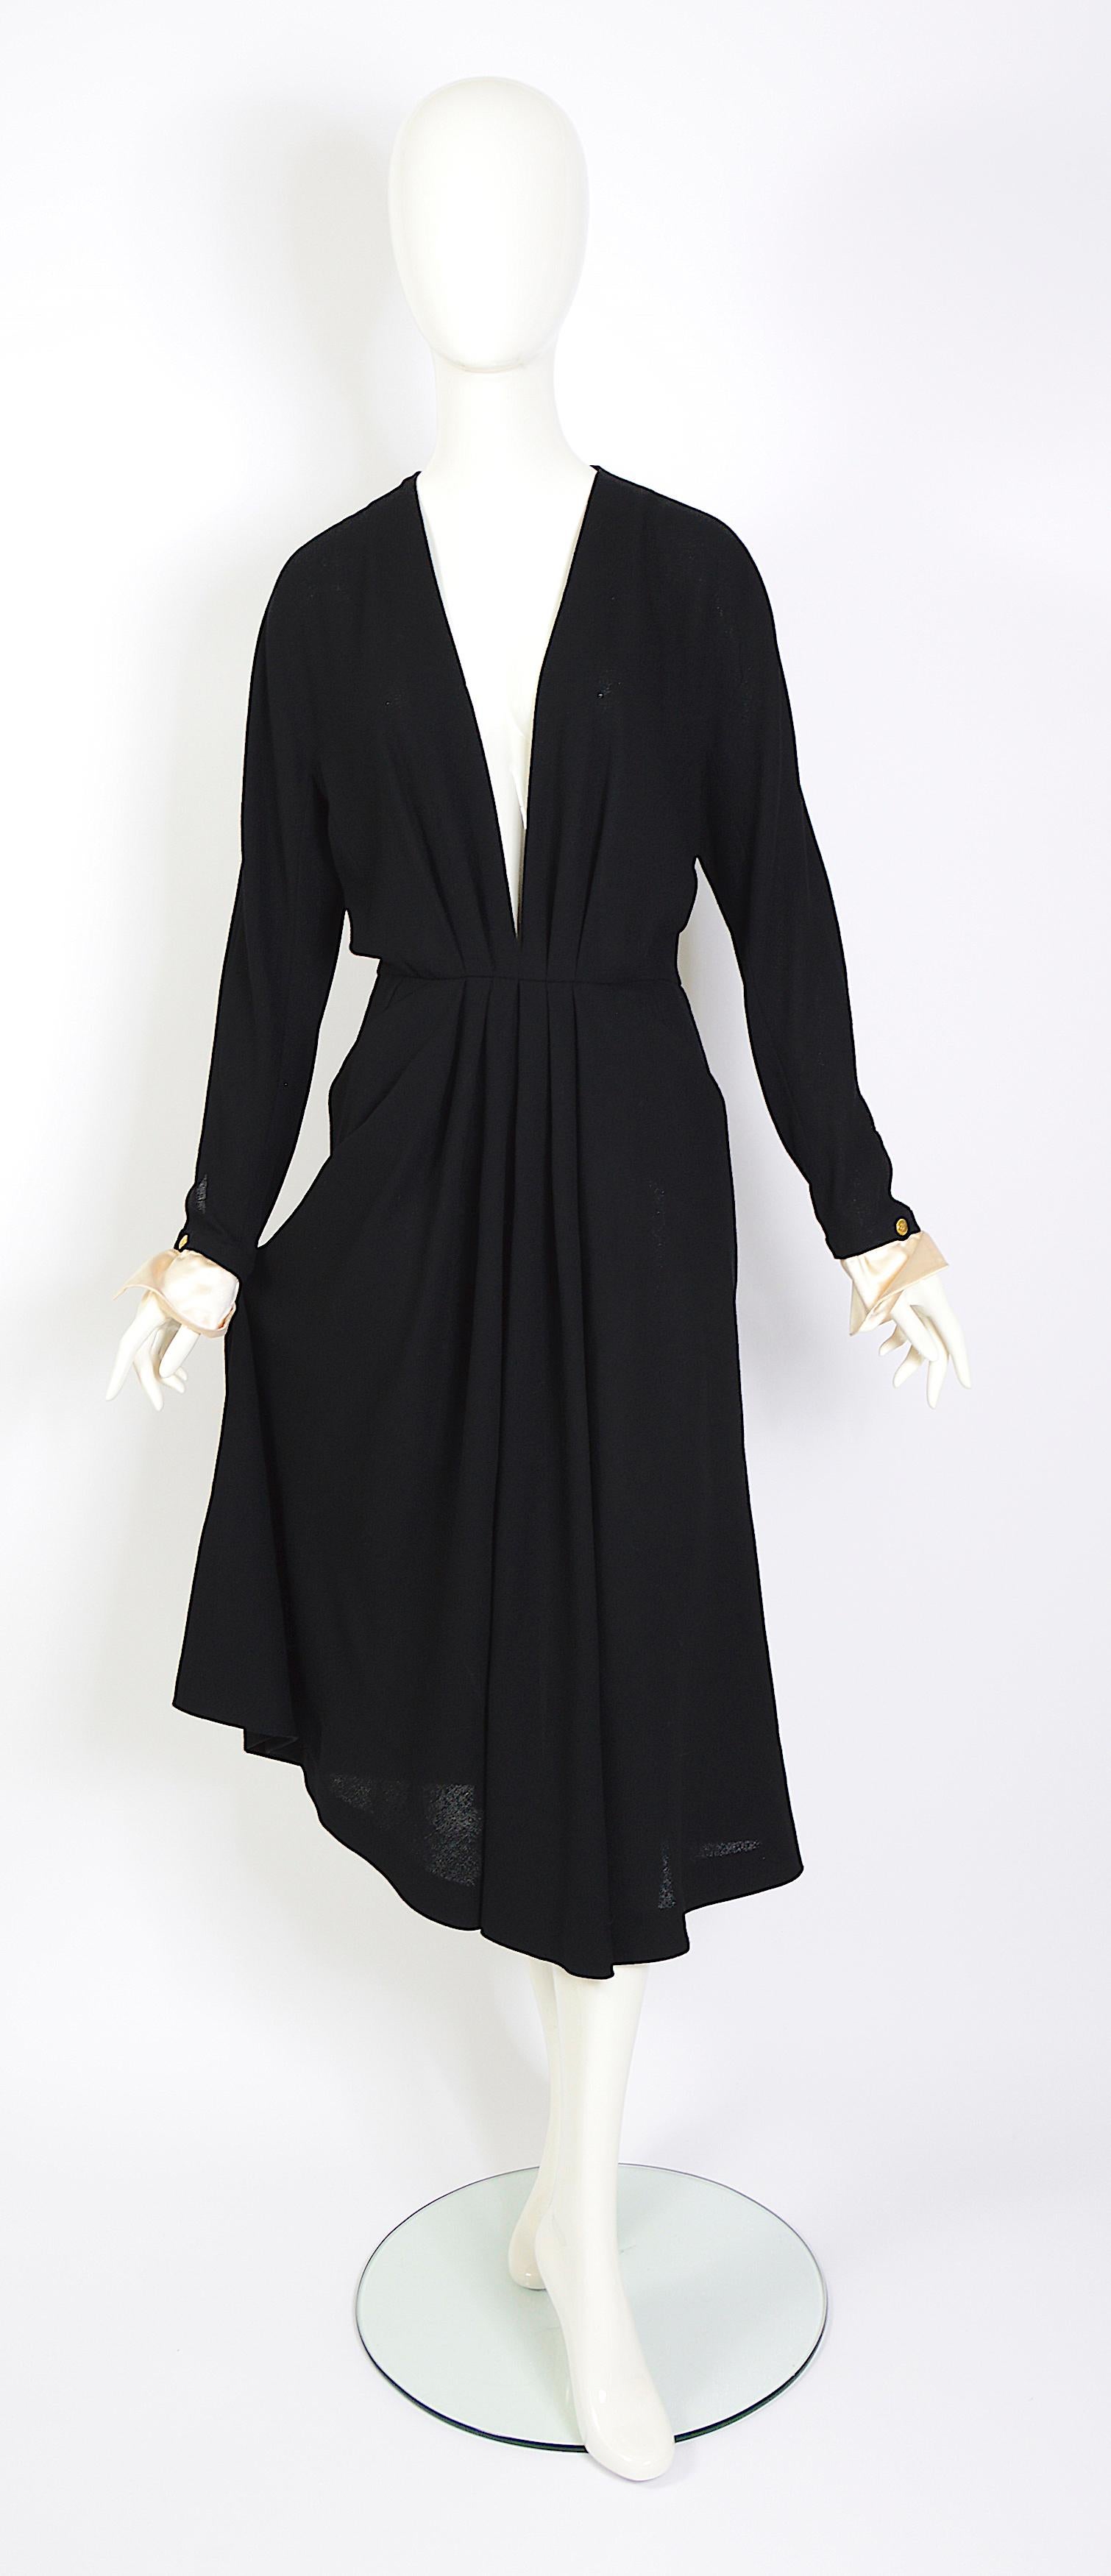 Chanel Boutique vintage des années 80, robe noire en crêpe plissé à profond décolleté en V, avec poignets amovibles en satin blanc. Conçue par Karl Lagerfeld, elle rappelle la décennie de Chanel et d'Ines de la Feal. 
L'élégance et la beauté de